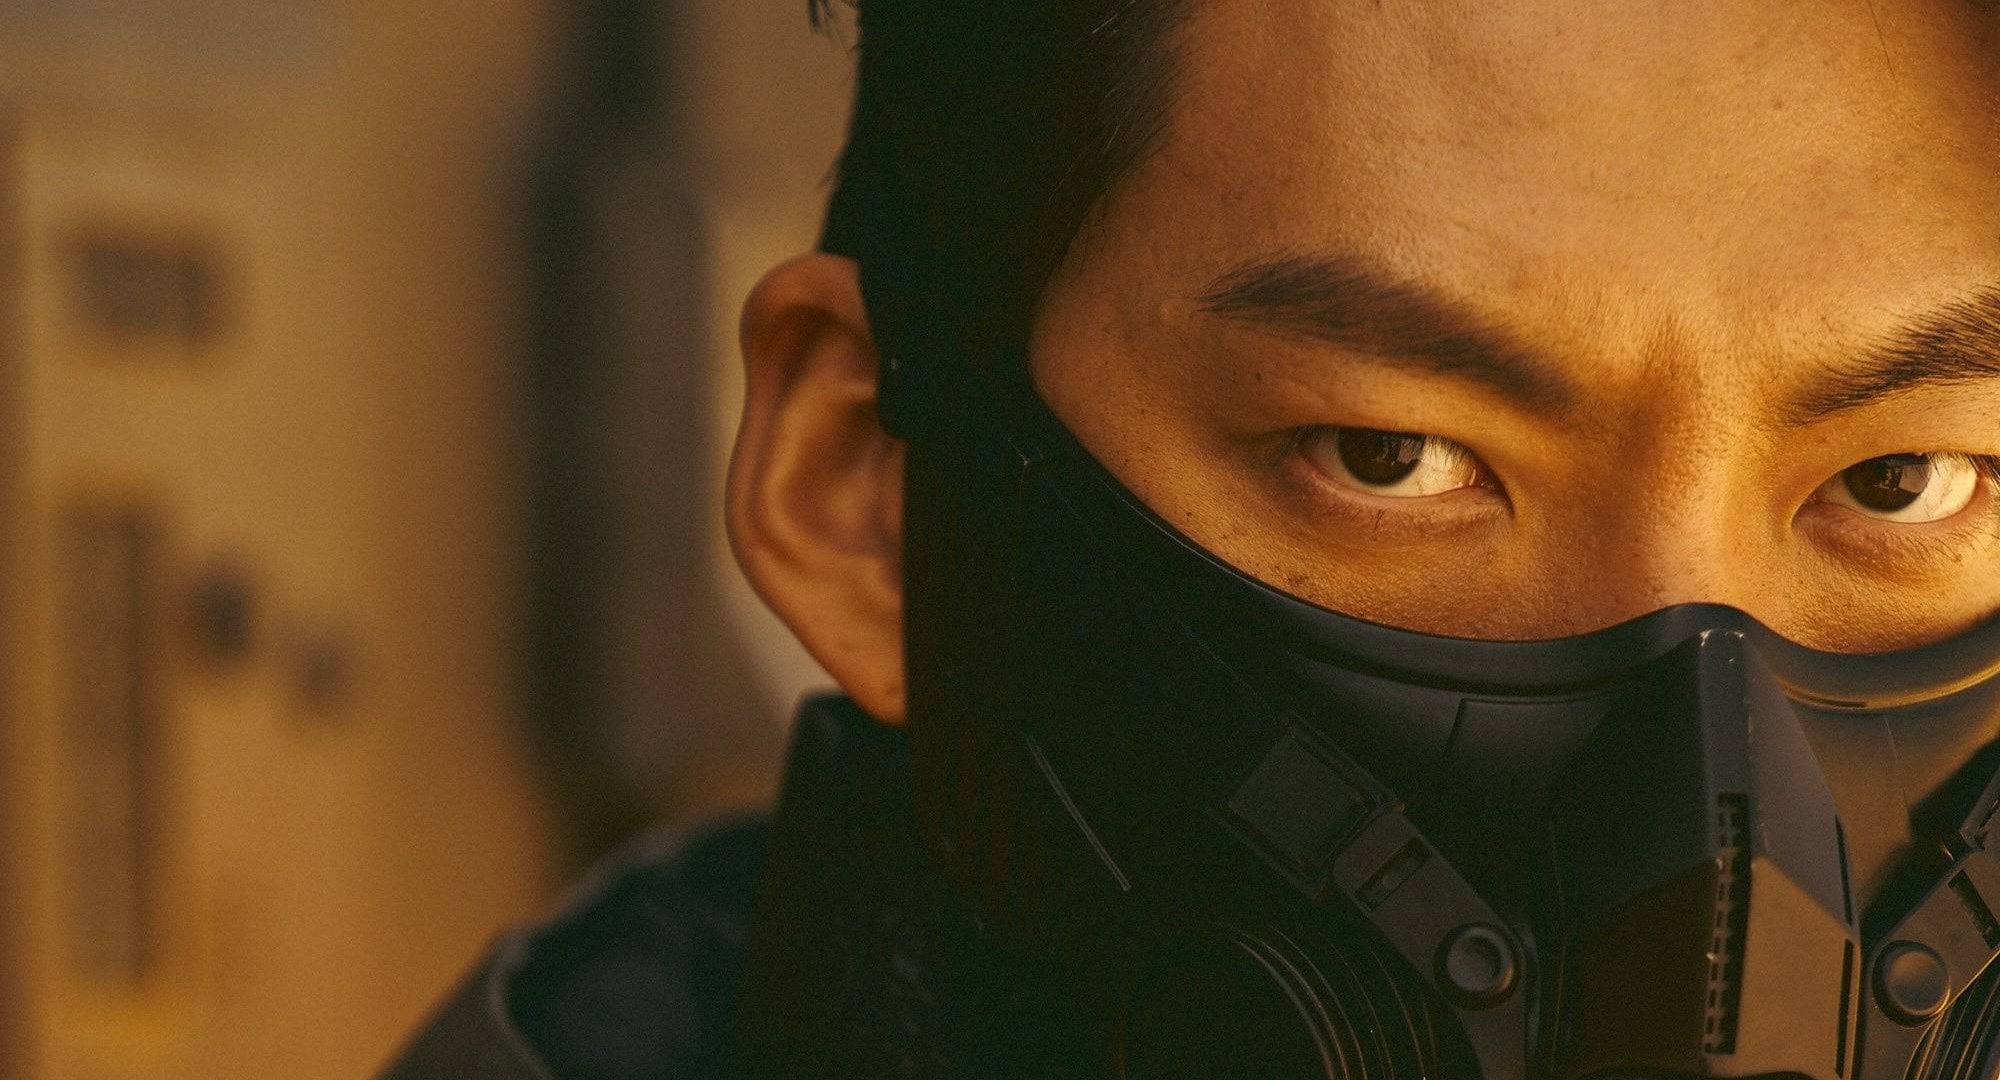 Kim Woo-bin as Knight 5-8 in 'Black Knight' K-drama.